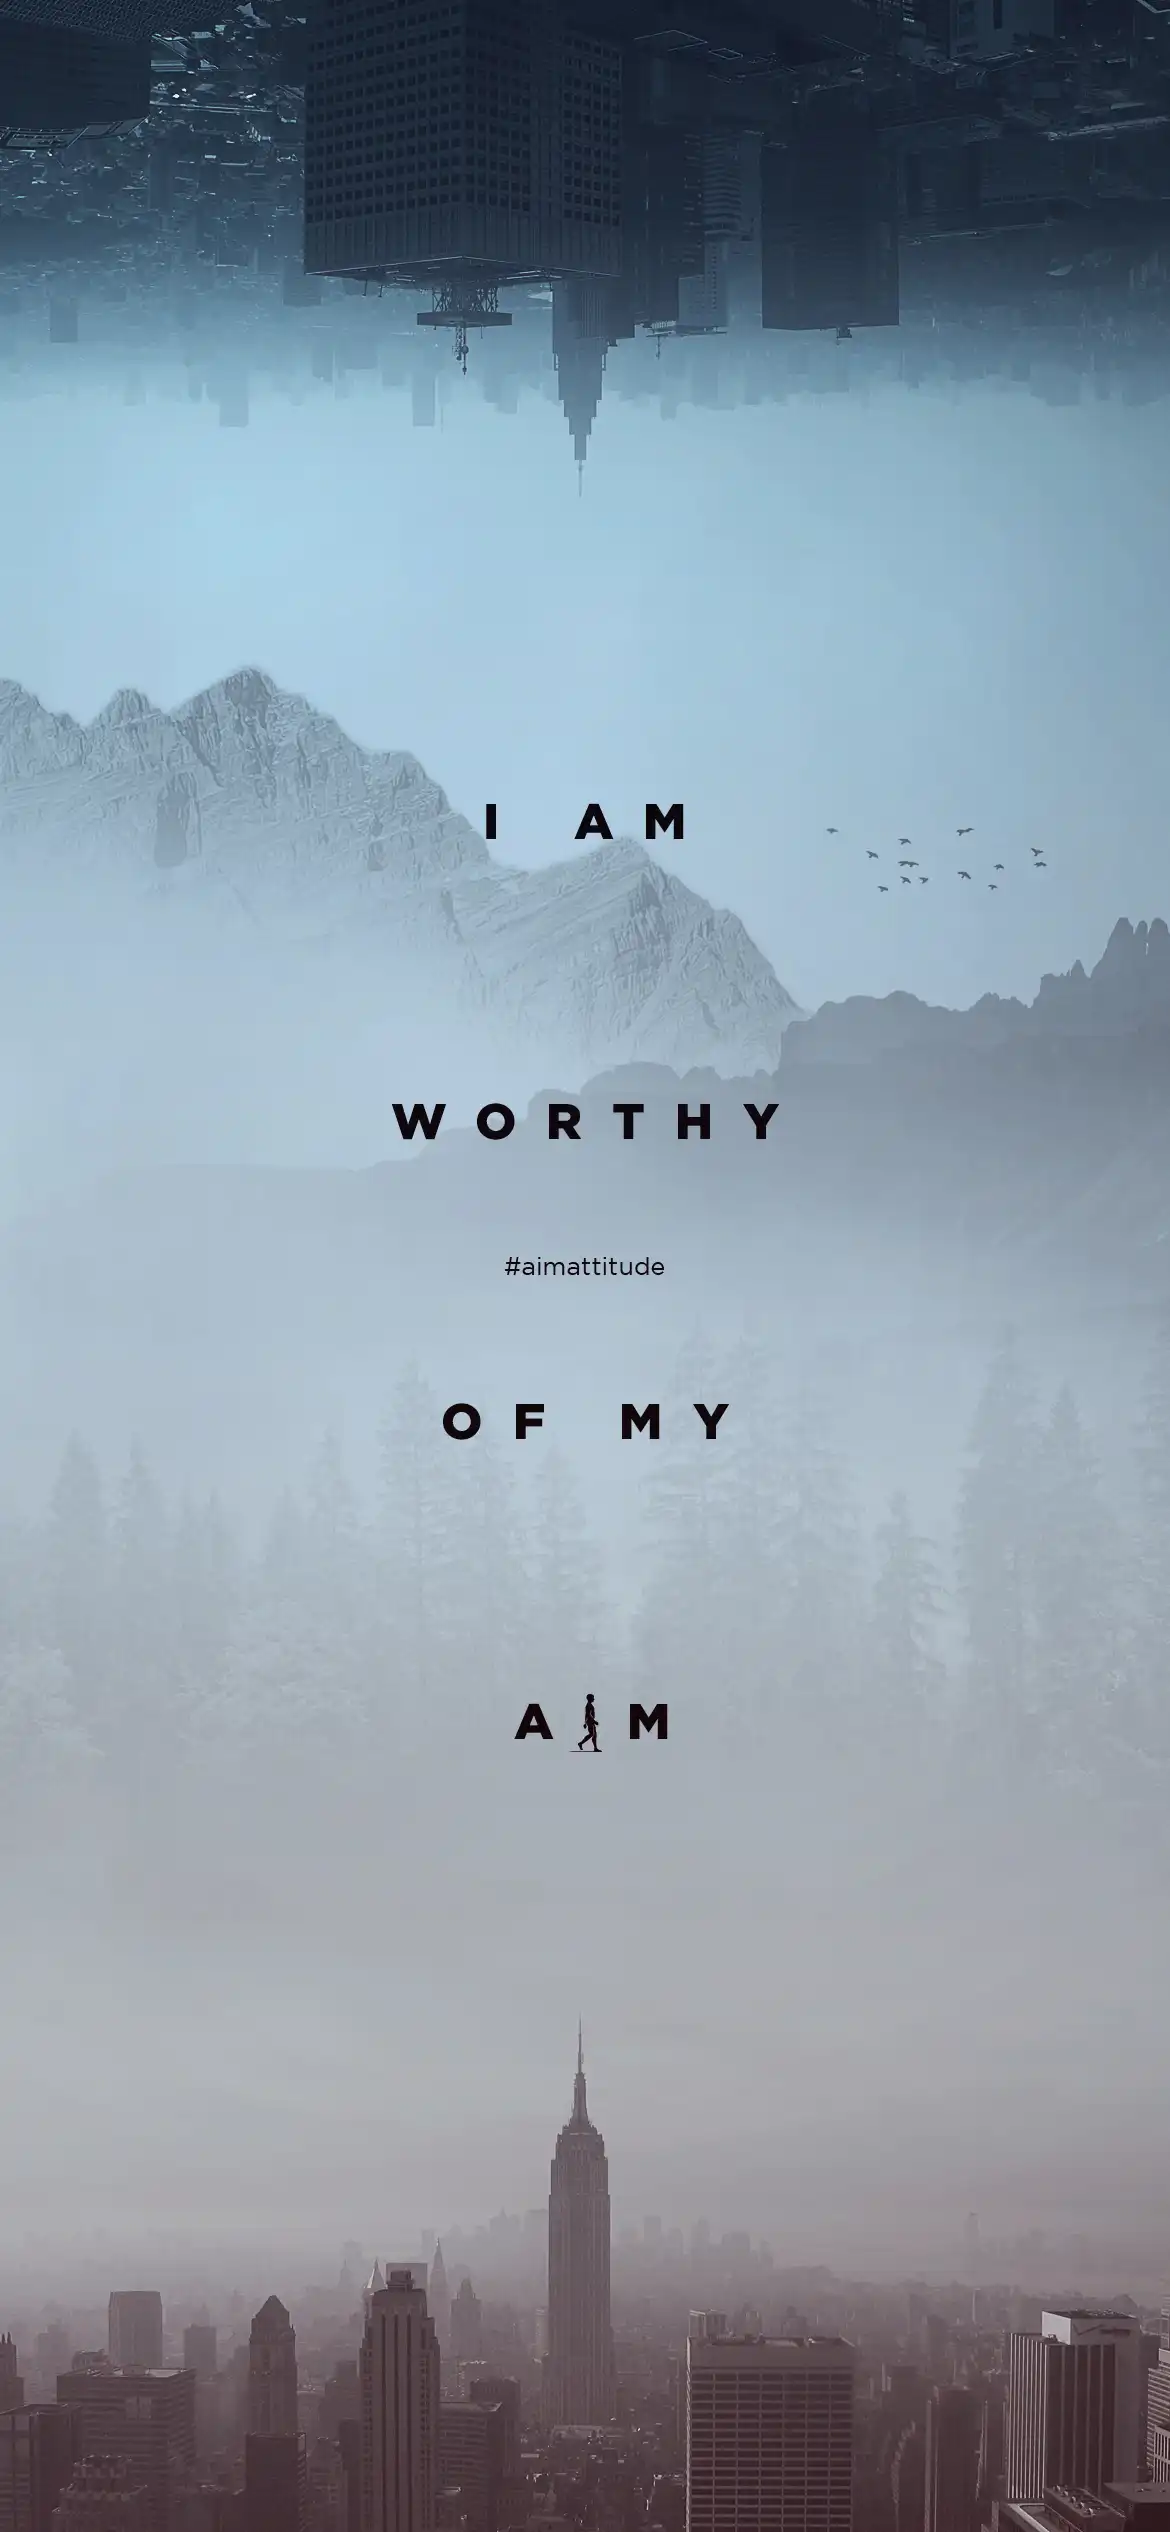 I AM worthy of my AIM